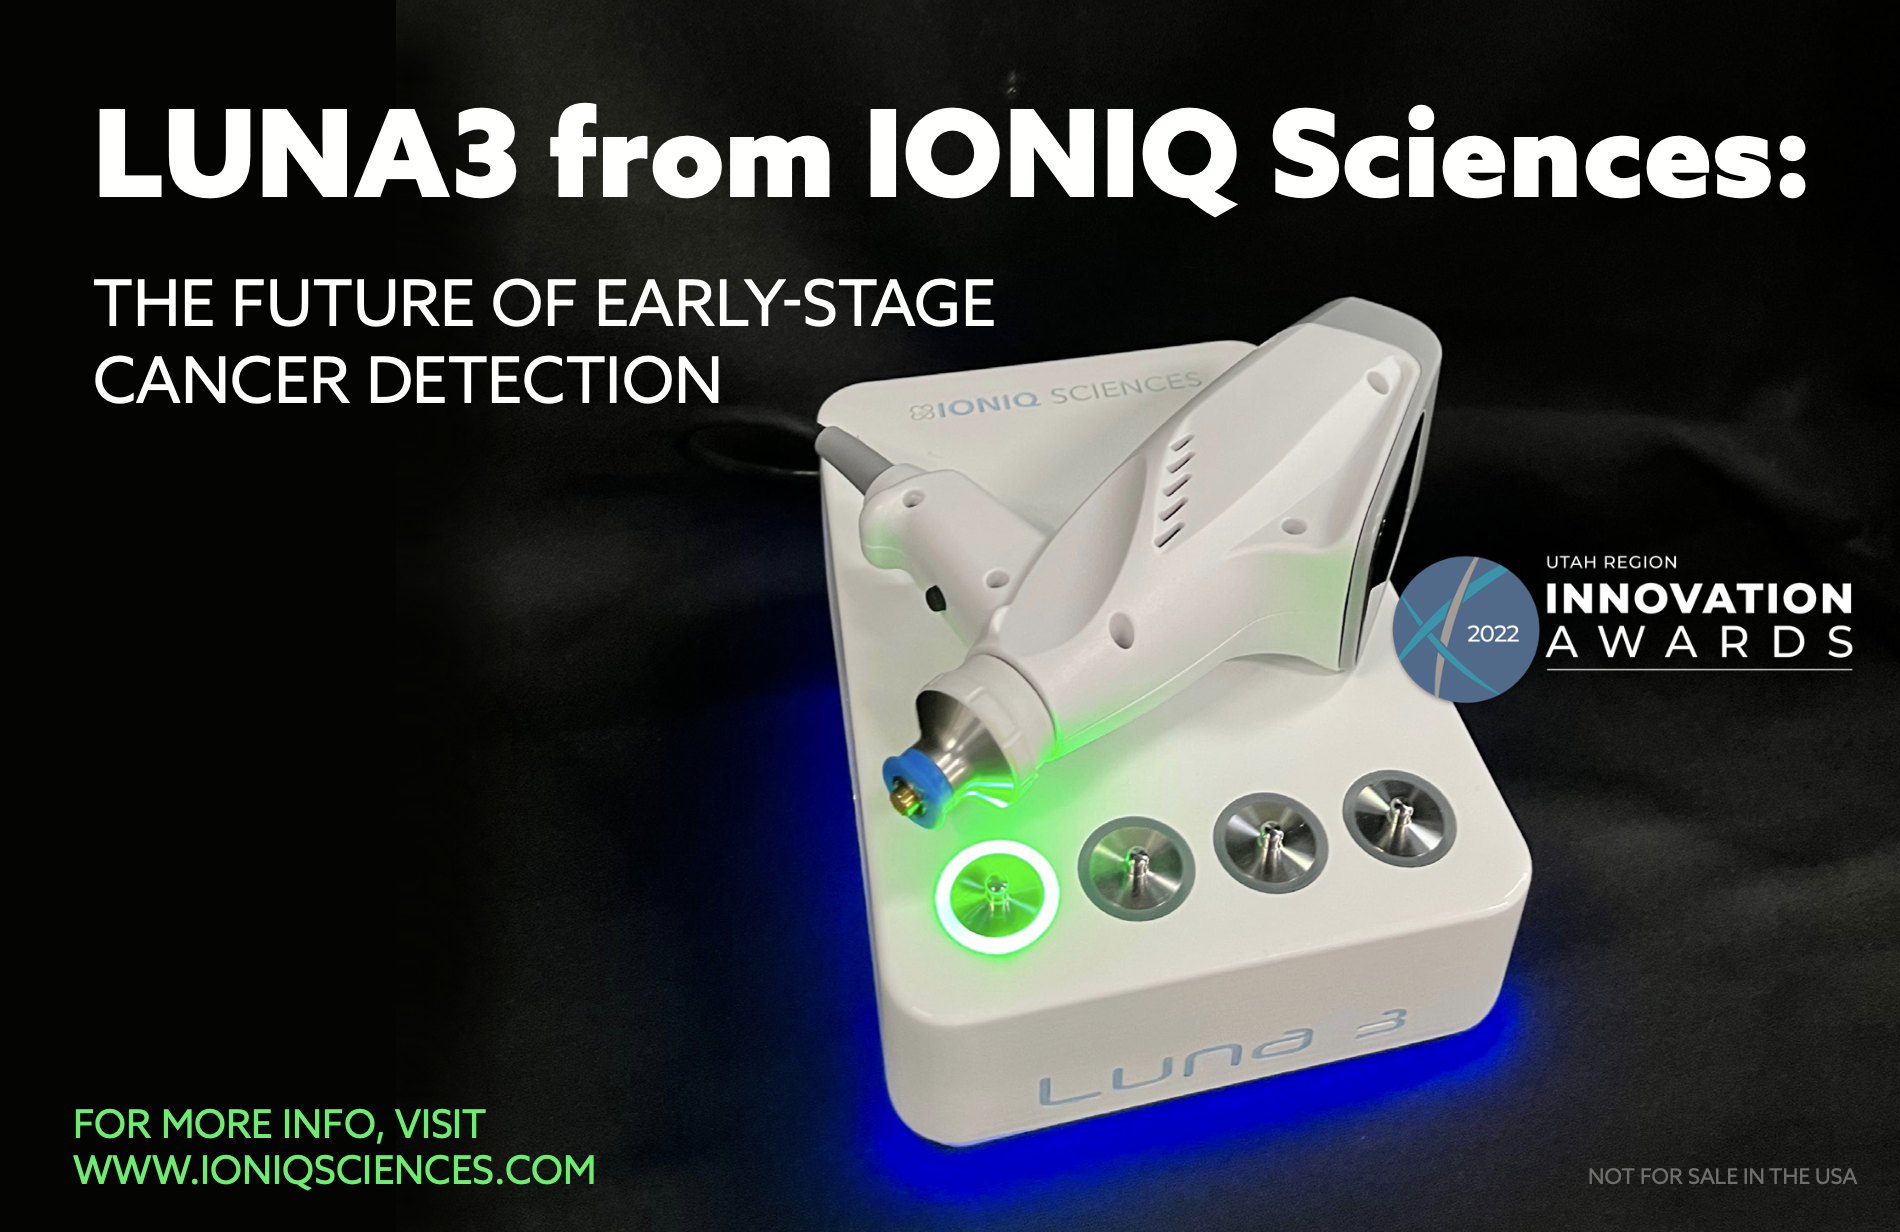 IONIQ Sciences, Inc., Friday, June 24, 2022, Press release picture